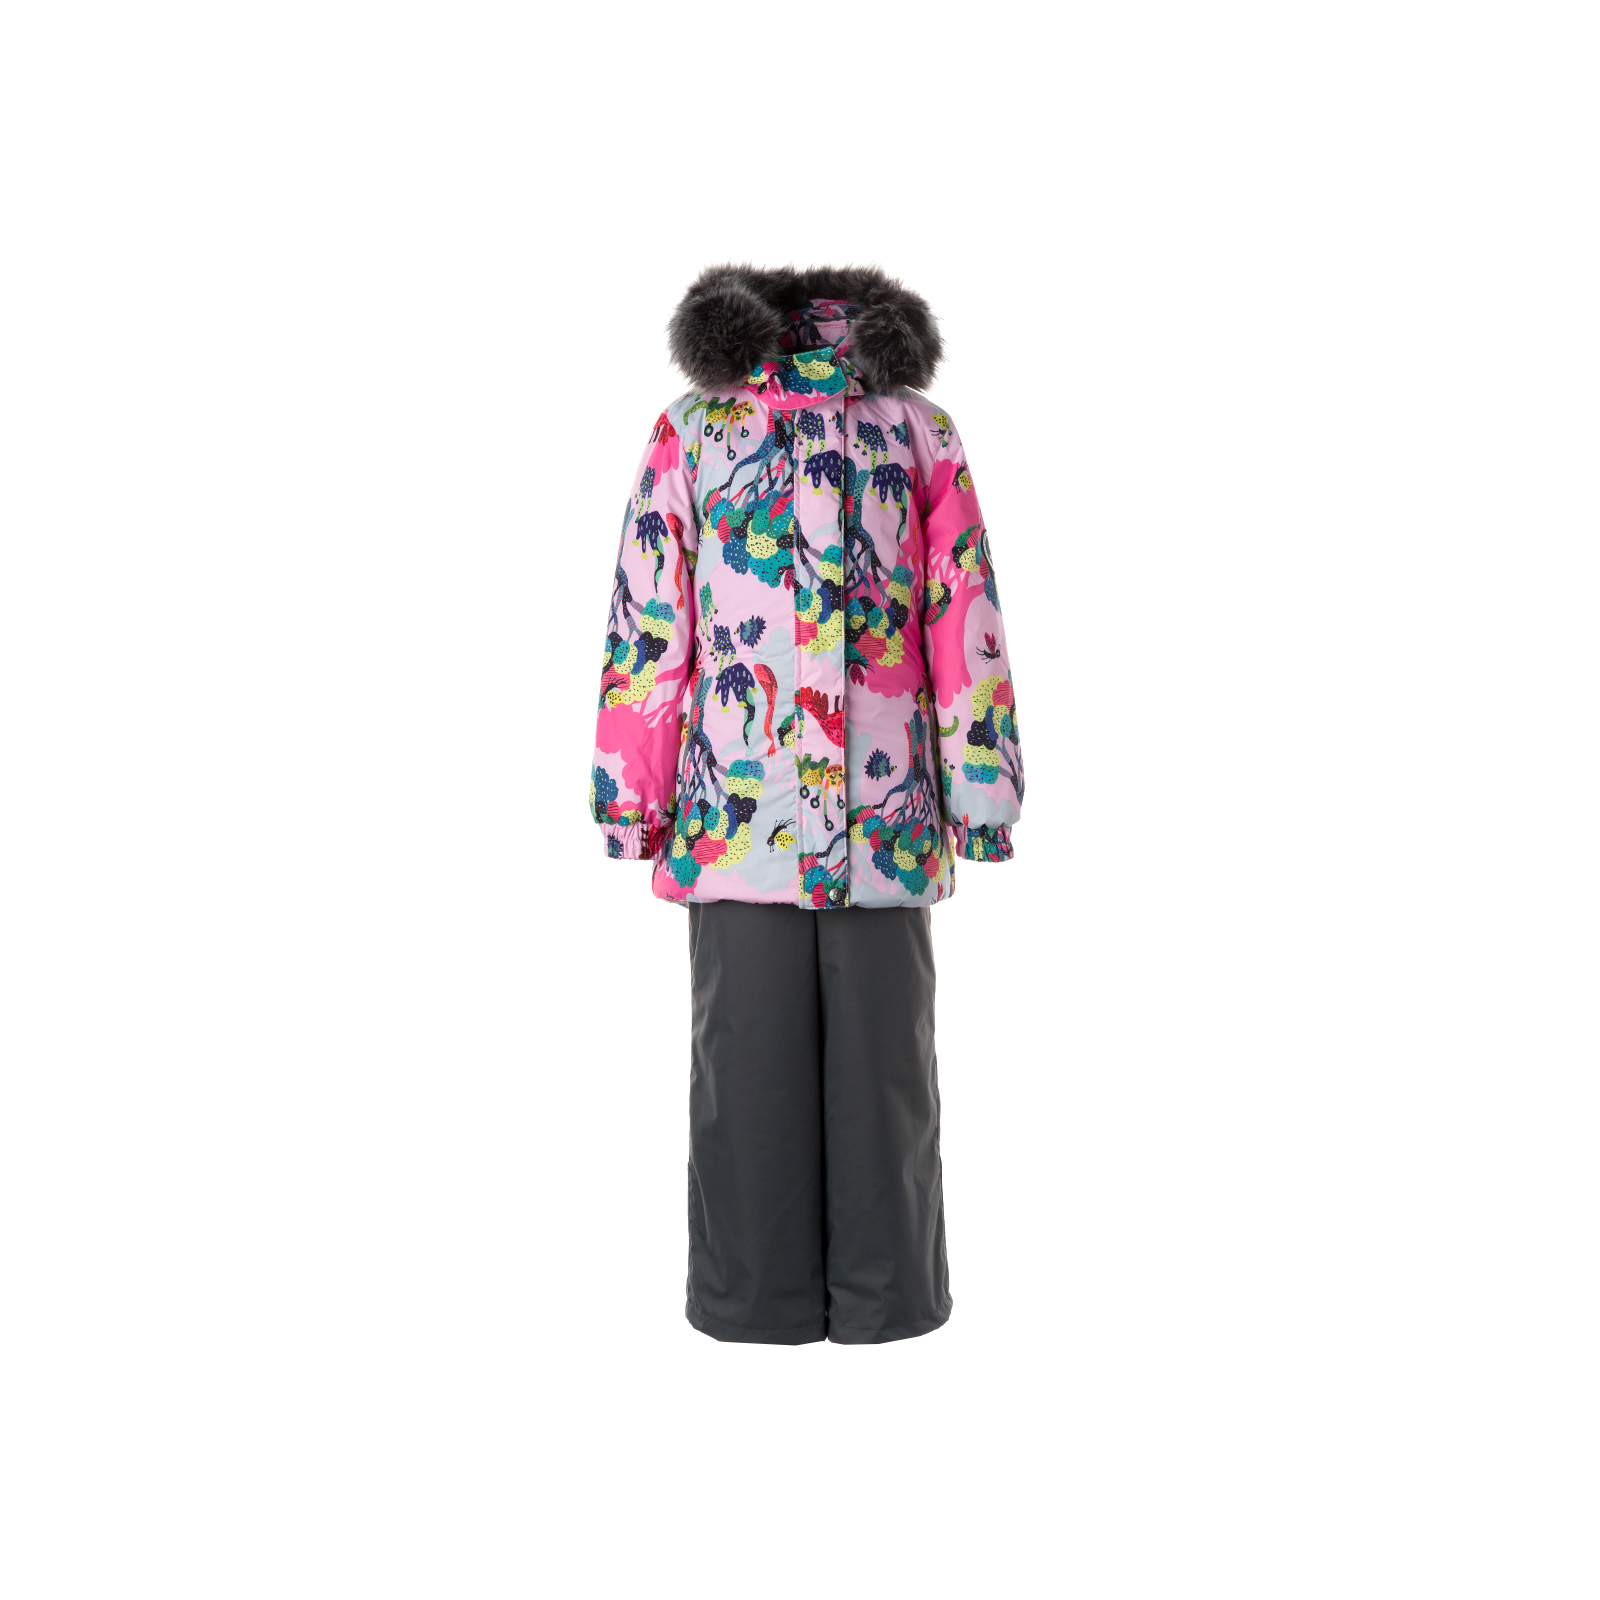 Комплект верхней одежды Huppa RENELY 2 41850230 cветло-розовый с принтом/серый 116 (4741468977768)